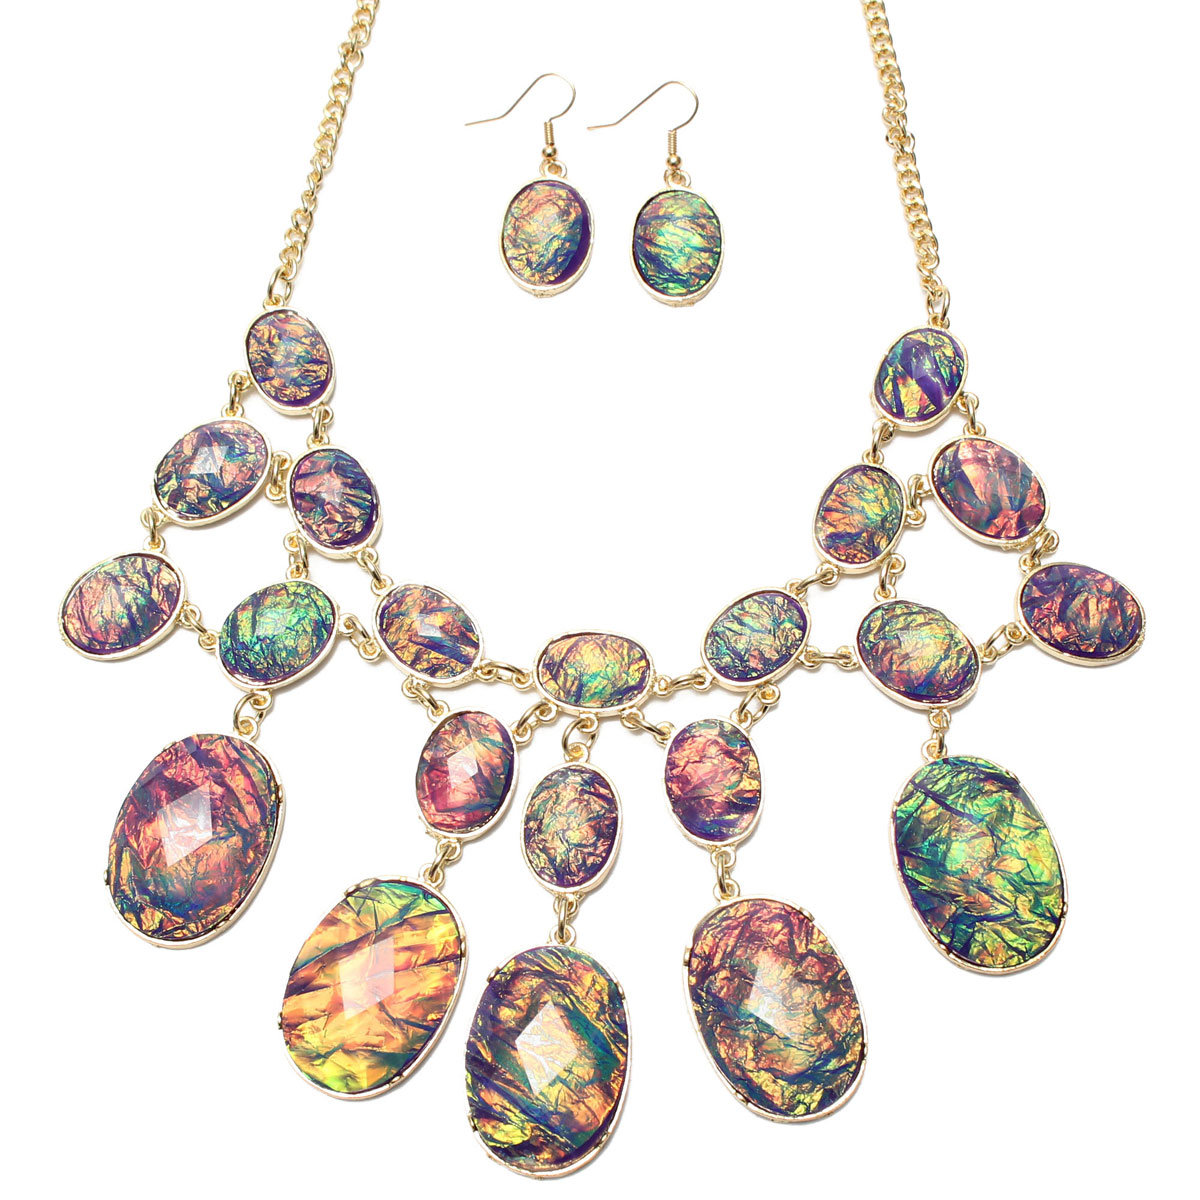 Crystal Oval Bib Bubble Necklace Earrings Jewelry Set